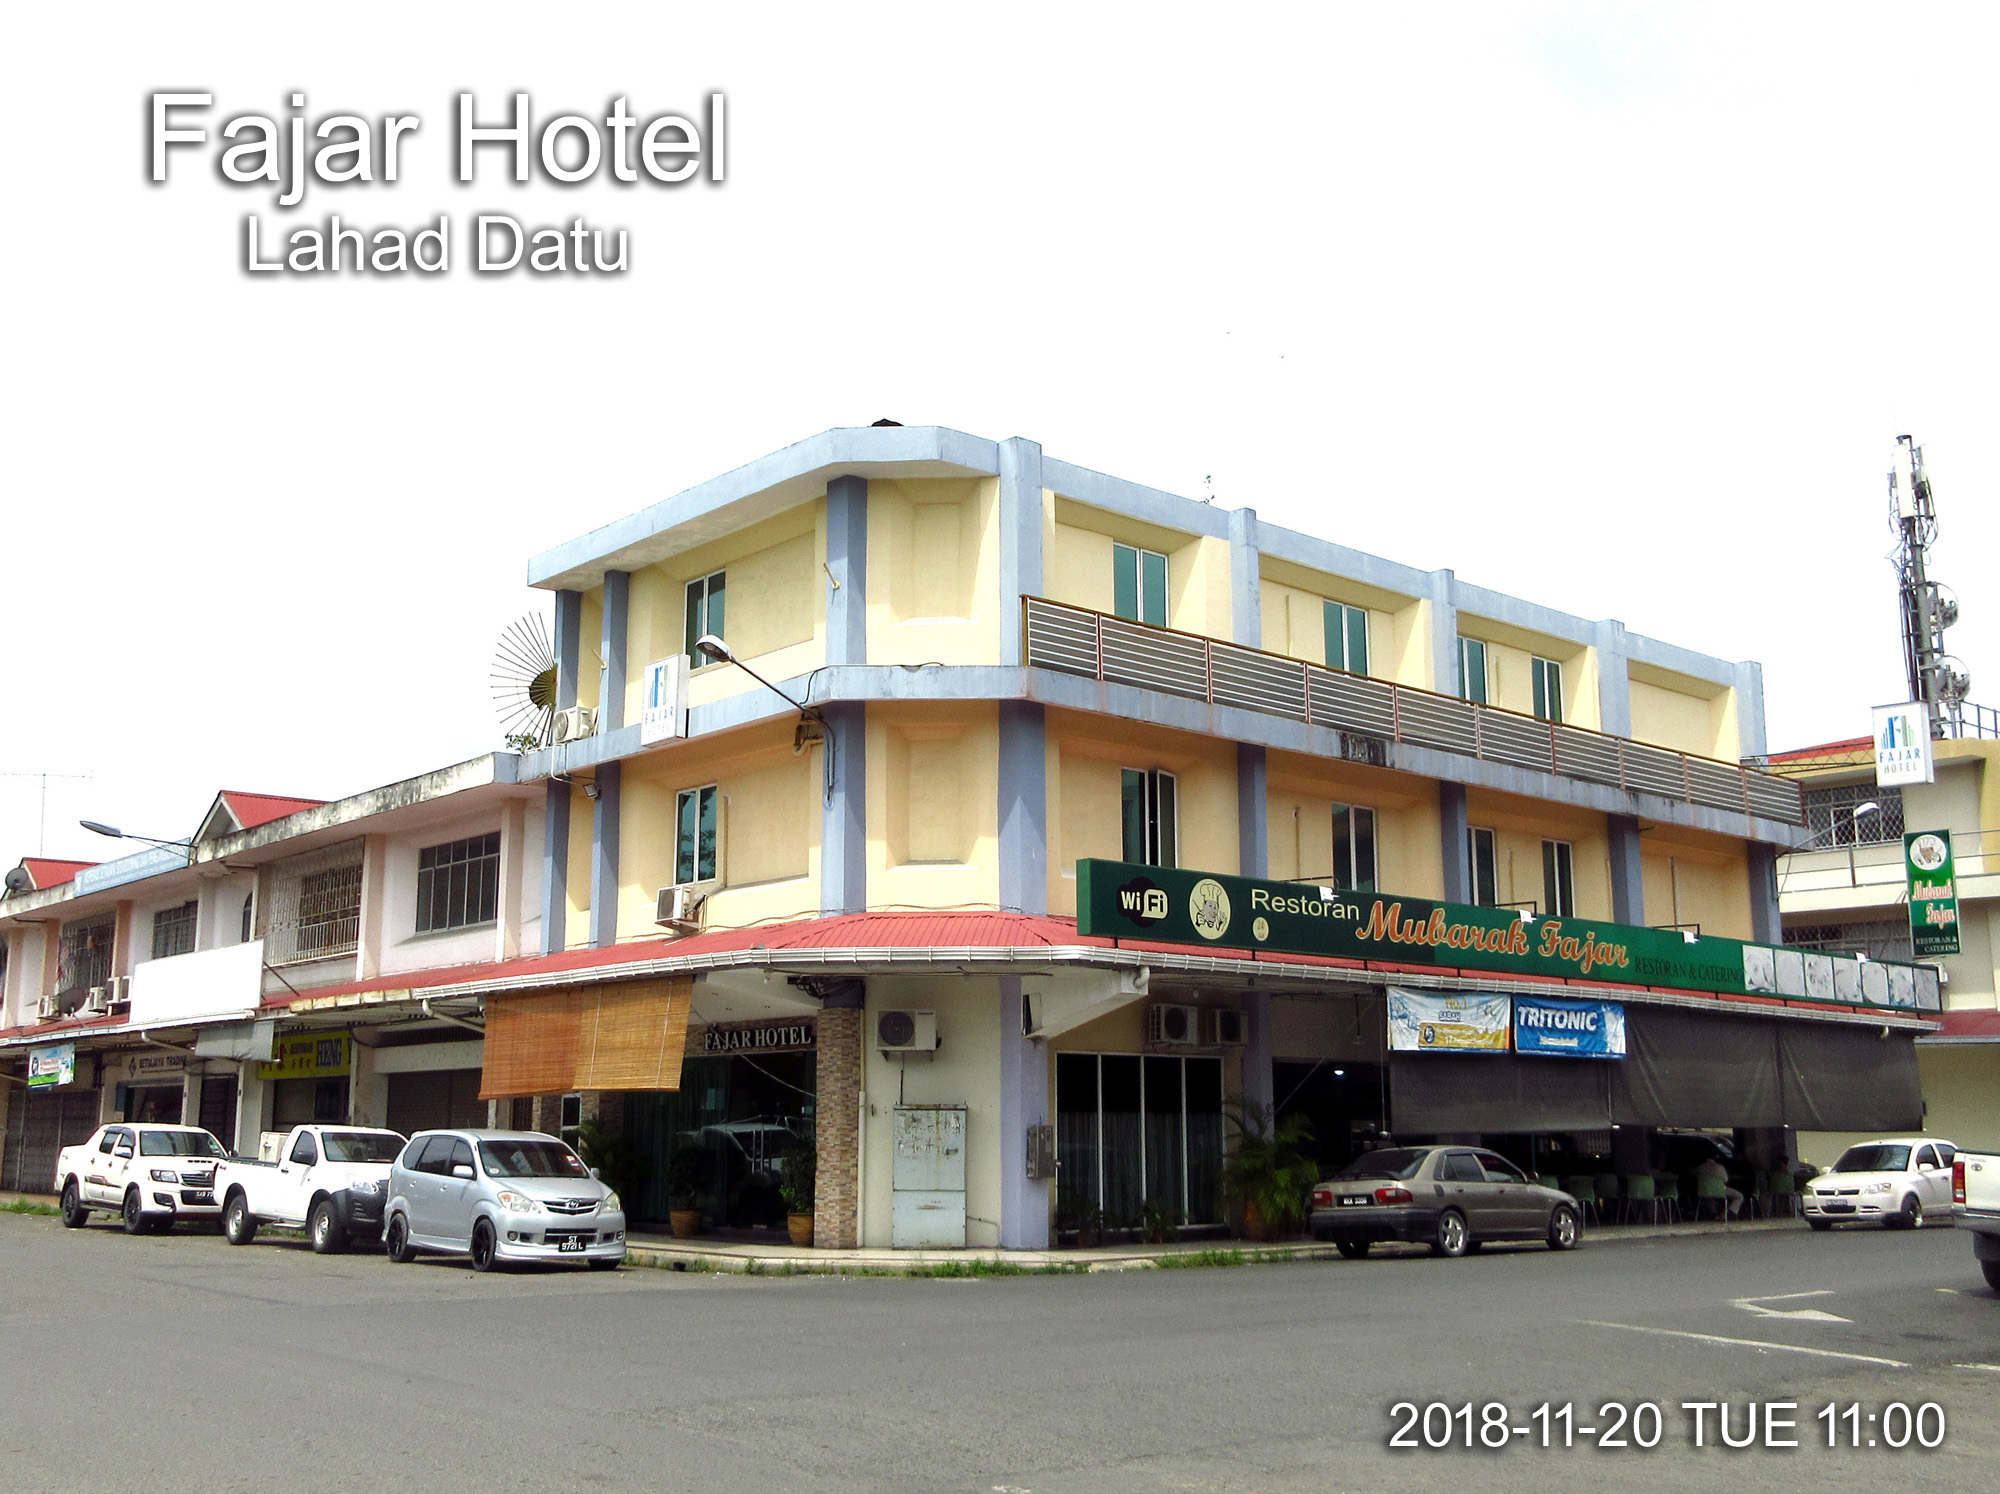 Fajar Hotel, Lahad Datu